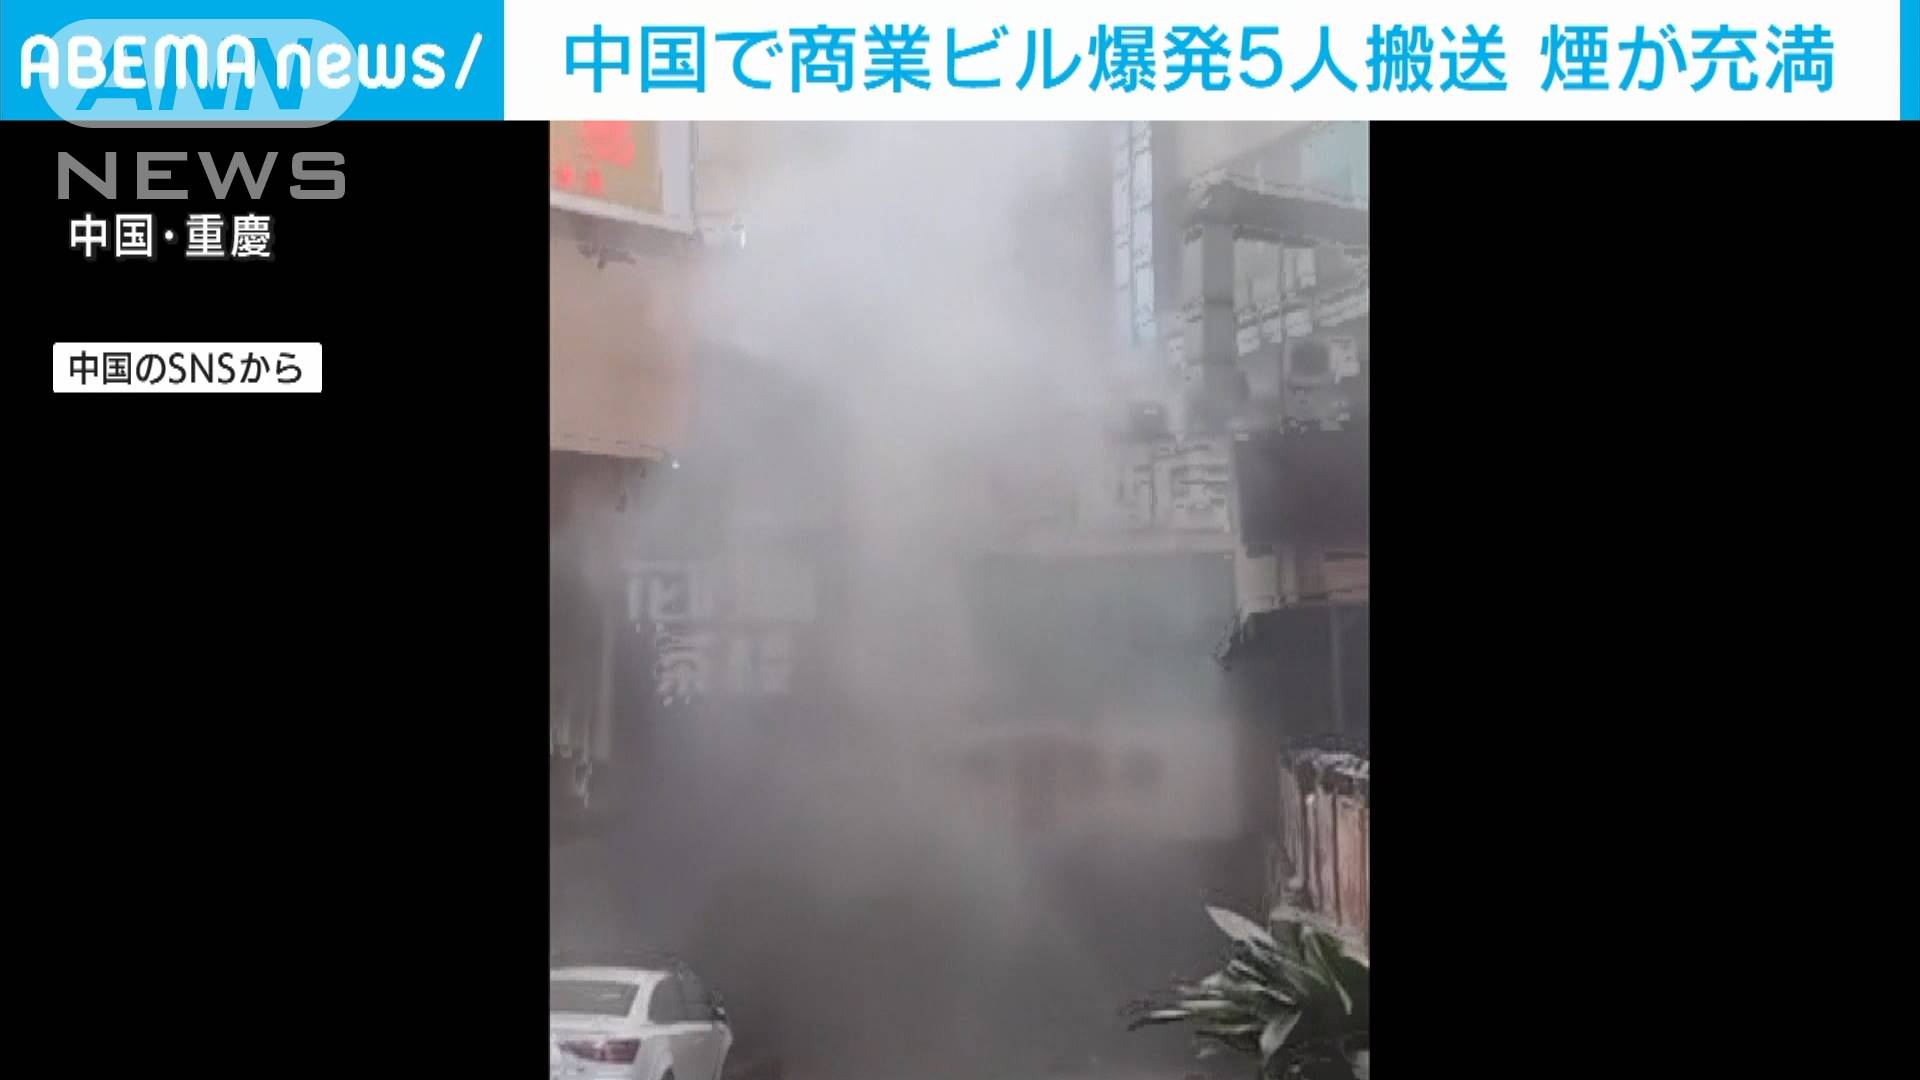 煙が充満し 商業ビル爆発の瞬間 中国 テレ朝news テレビ朝日のニュースサイト